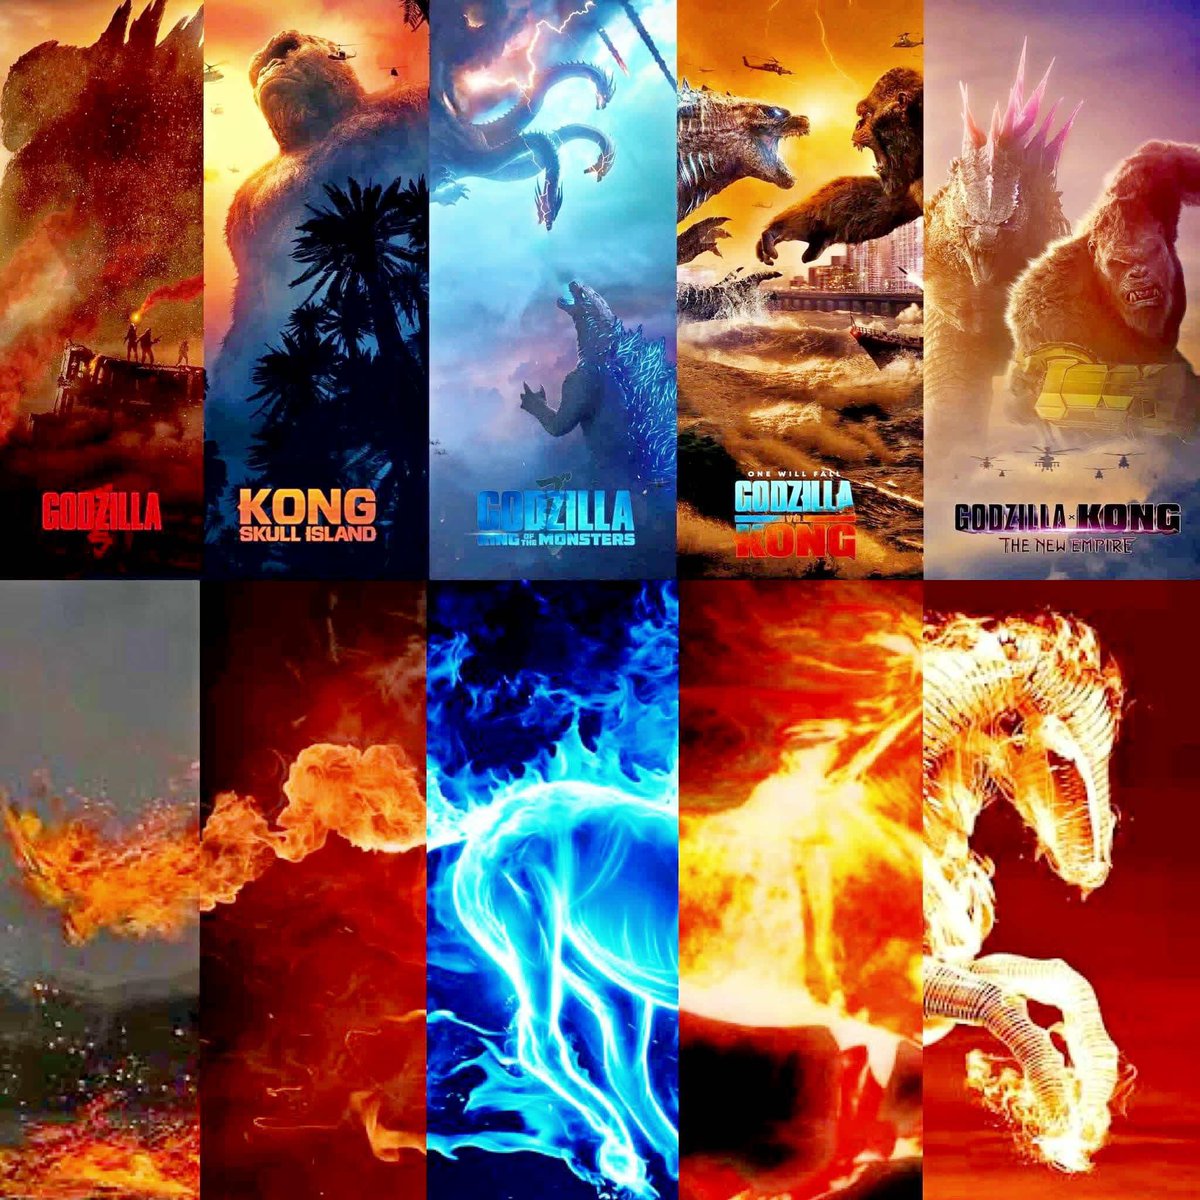 Just putting the truth out there 🤷🏻‍♂️

#Godzilla
#KongSkullIsland
#GodzillaKOTM
#GodzillaVsKong
#GodzillaXKong